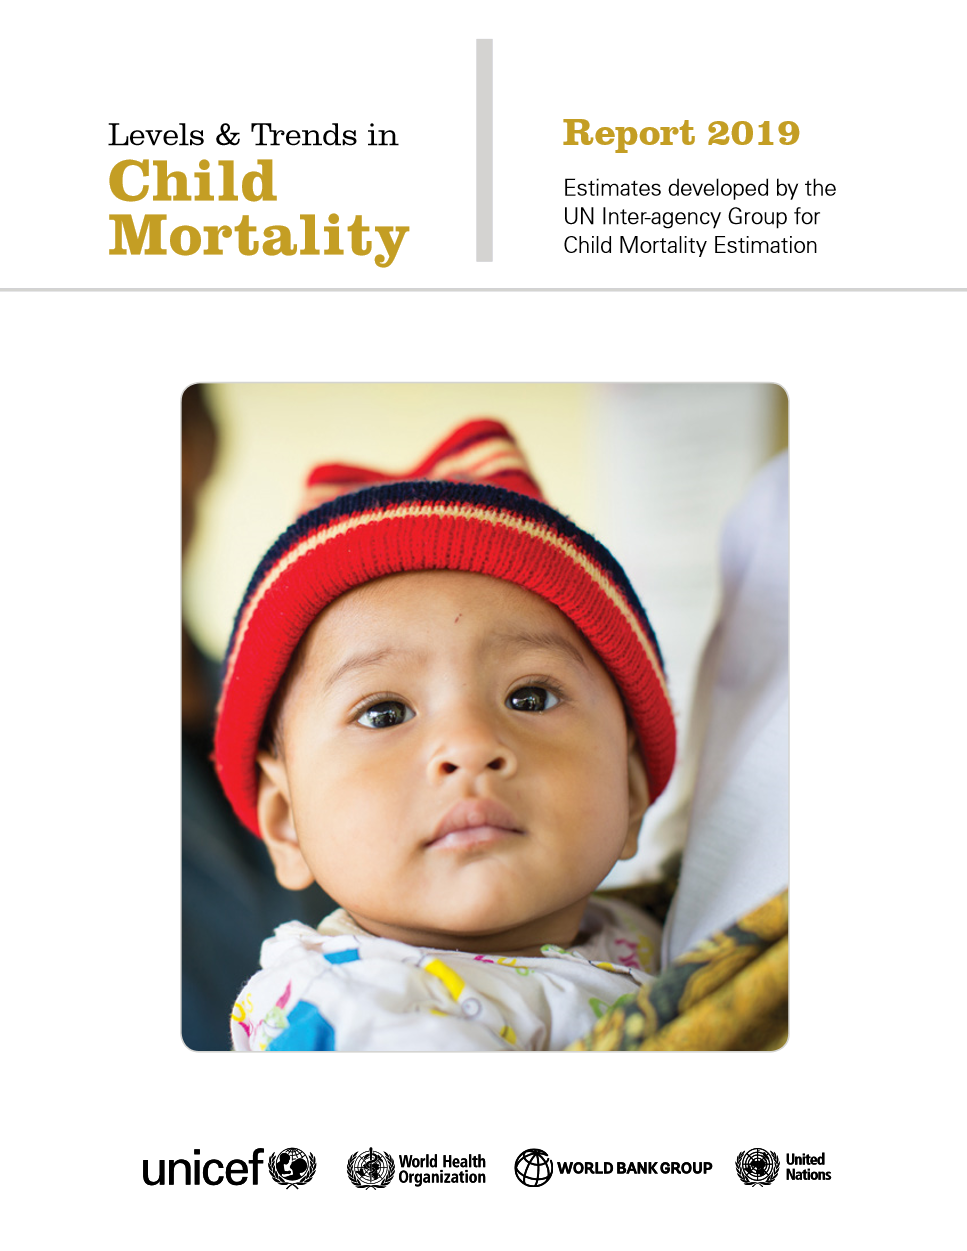 child-mortality-report-2019-png 5f74cddcff7de064